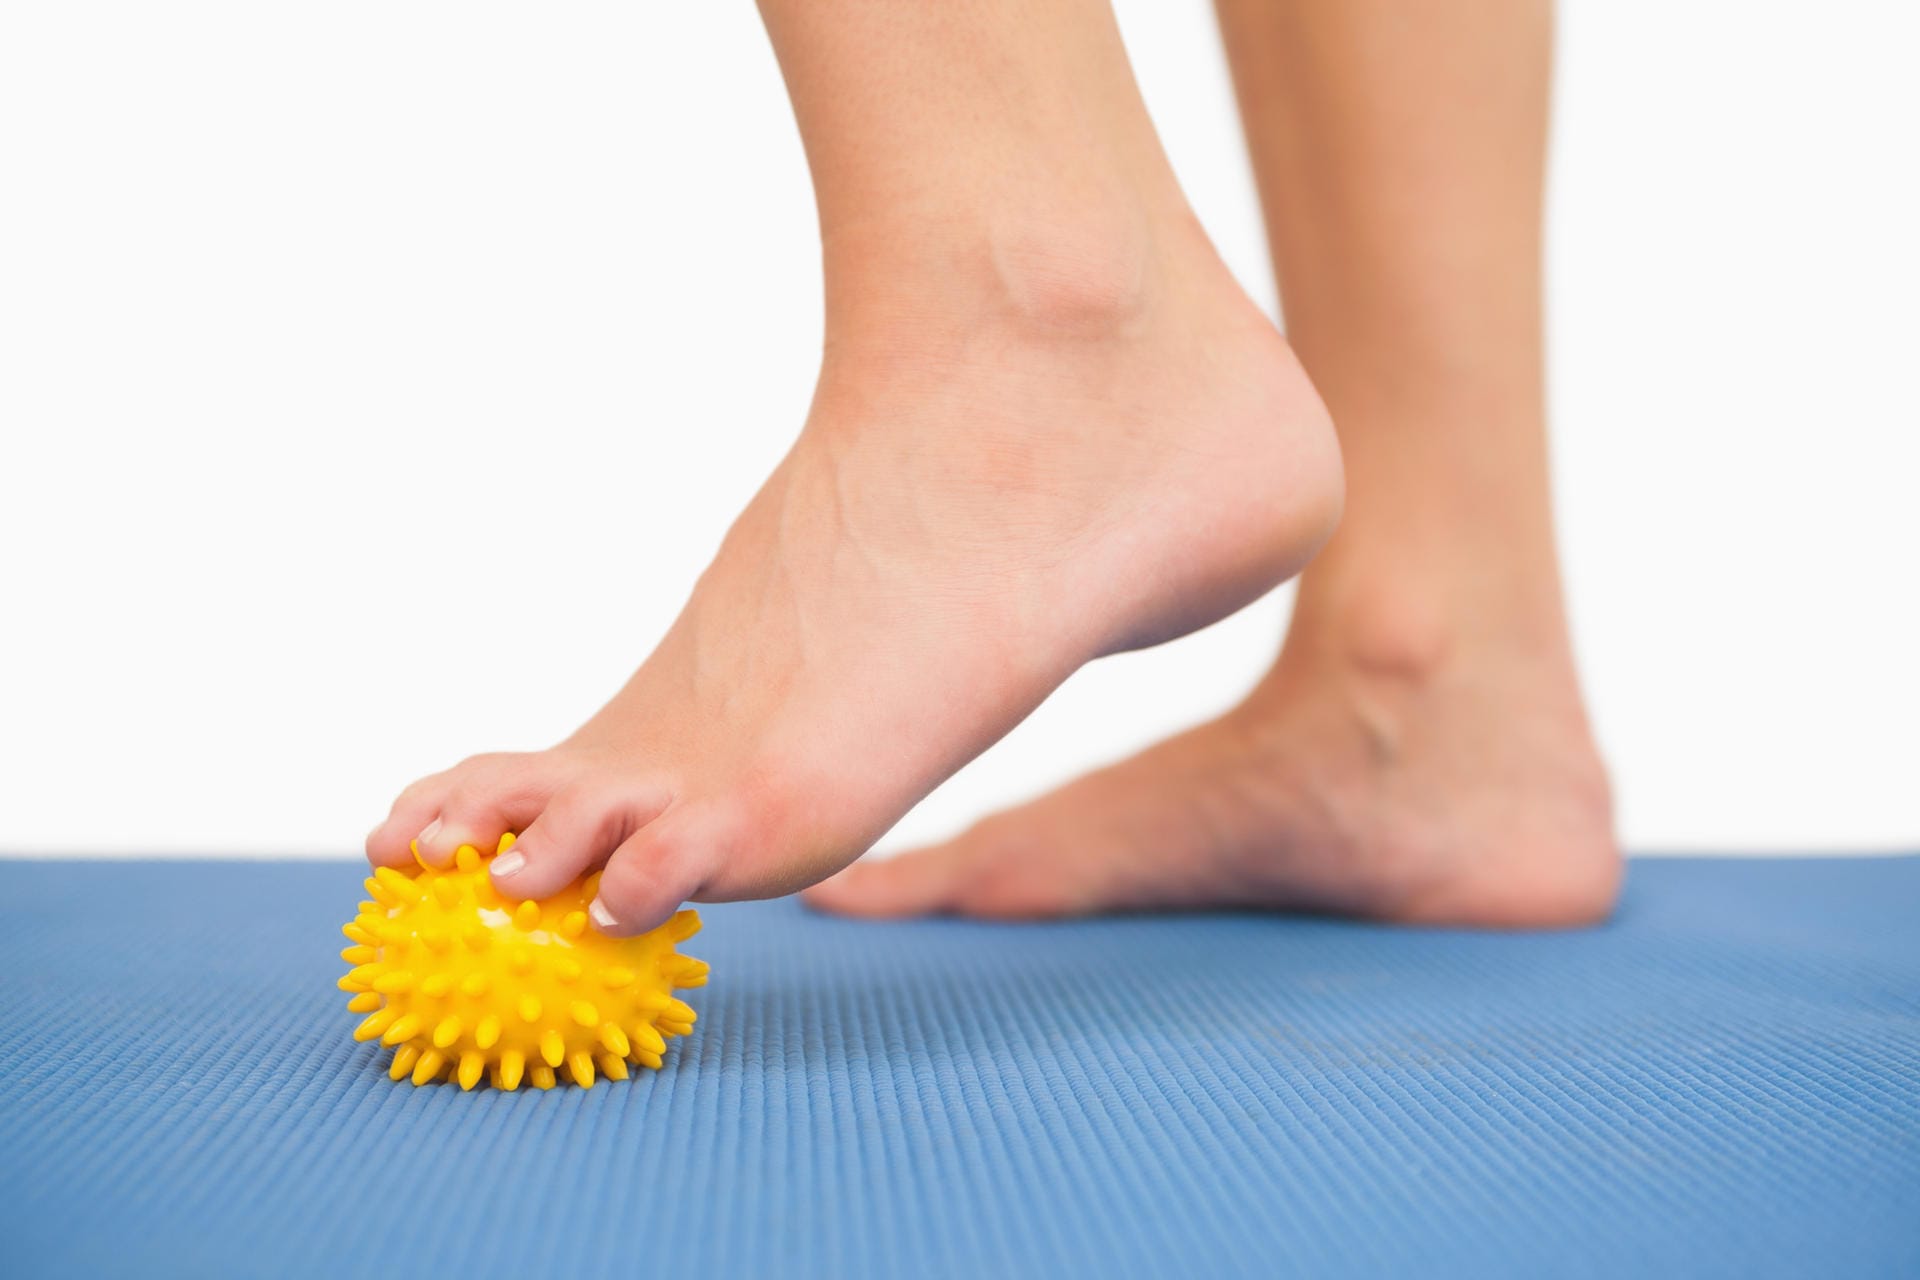 Um den Fuß und seine Muskeln zu kräftigen und die Schmerzen zu lindern, helfen einige Übungen. Rollen Sie Ihren Fuß zum Beispiel von den Zehen bis zur Ferse und wieder zurück über einen Igelball oder einen Tennisball.